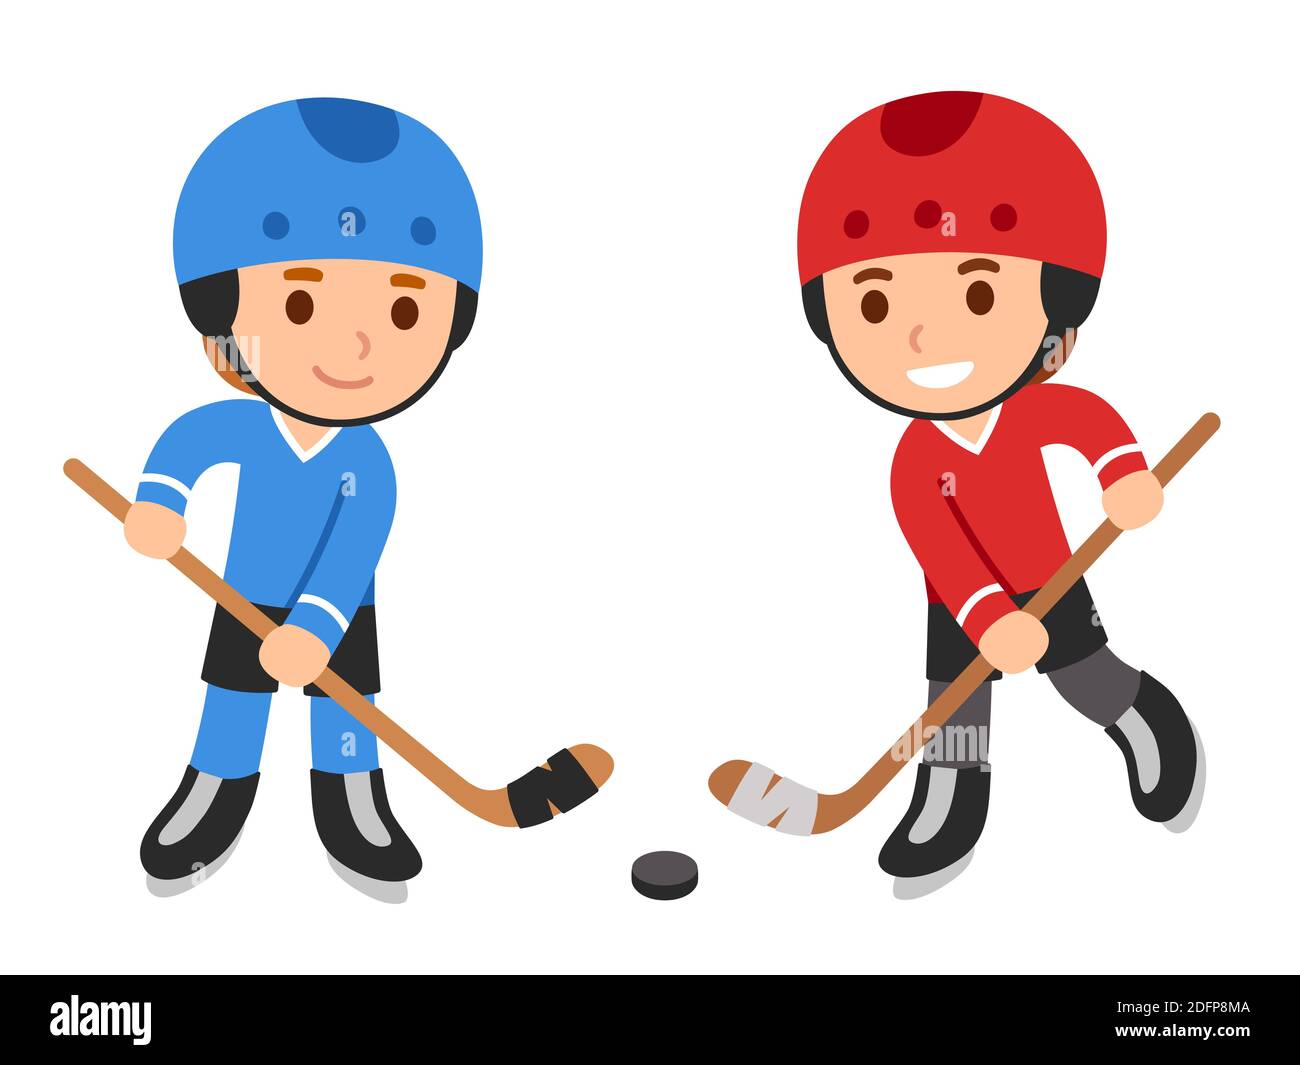 Carino cartoon bambini che giocano a hockey, ragazzi in divisa blu e rossa squadra. Illustrazione della clip art vettoriale isolata. Illustrazione Vettoriale